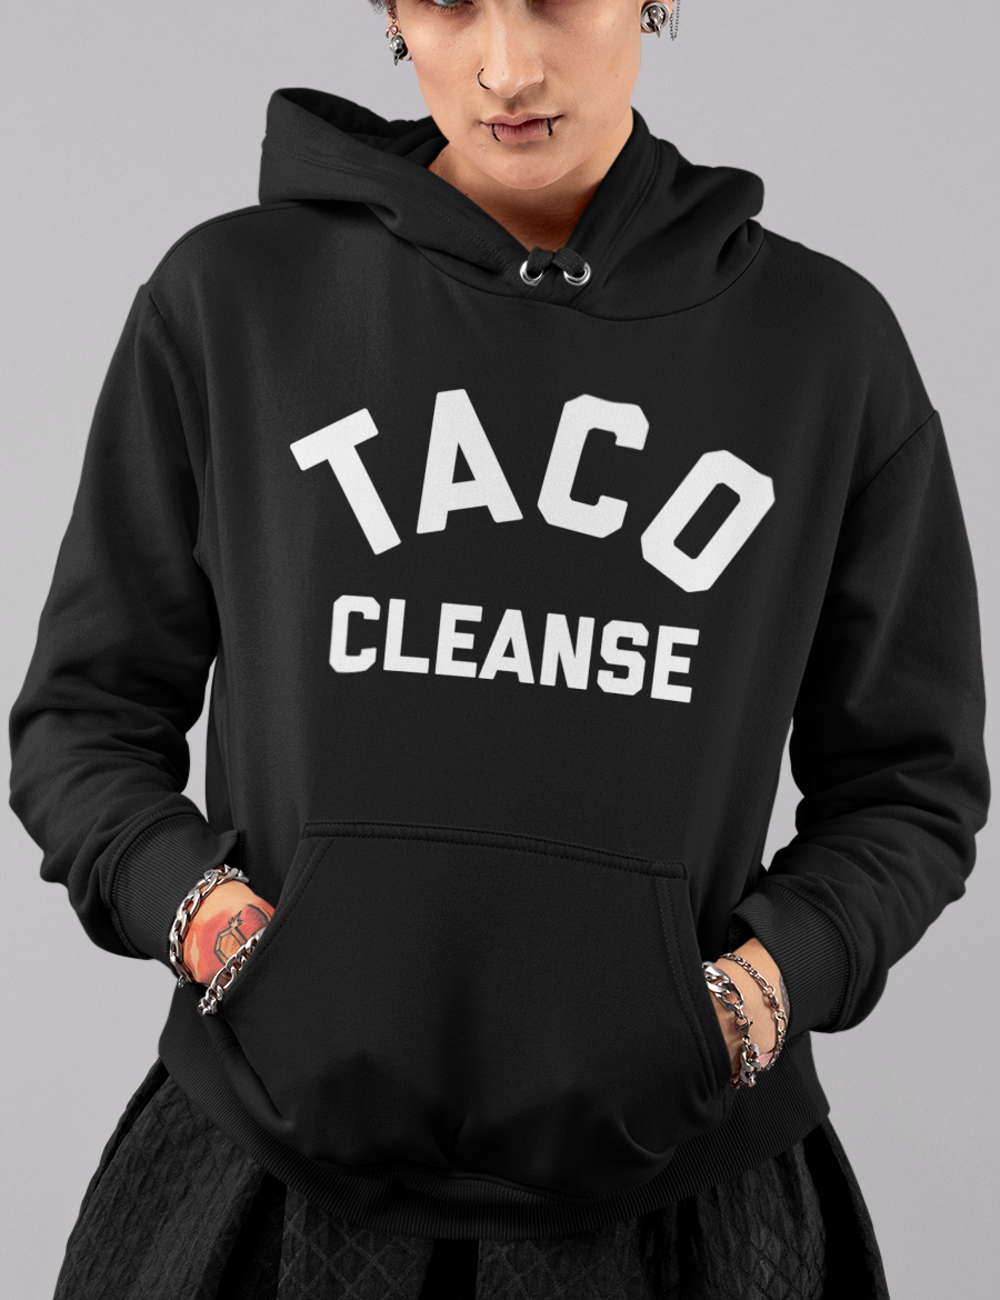 Taco Cleanse | Premium Hoodie OniTakai